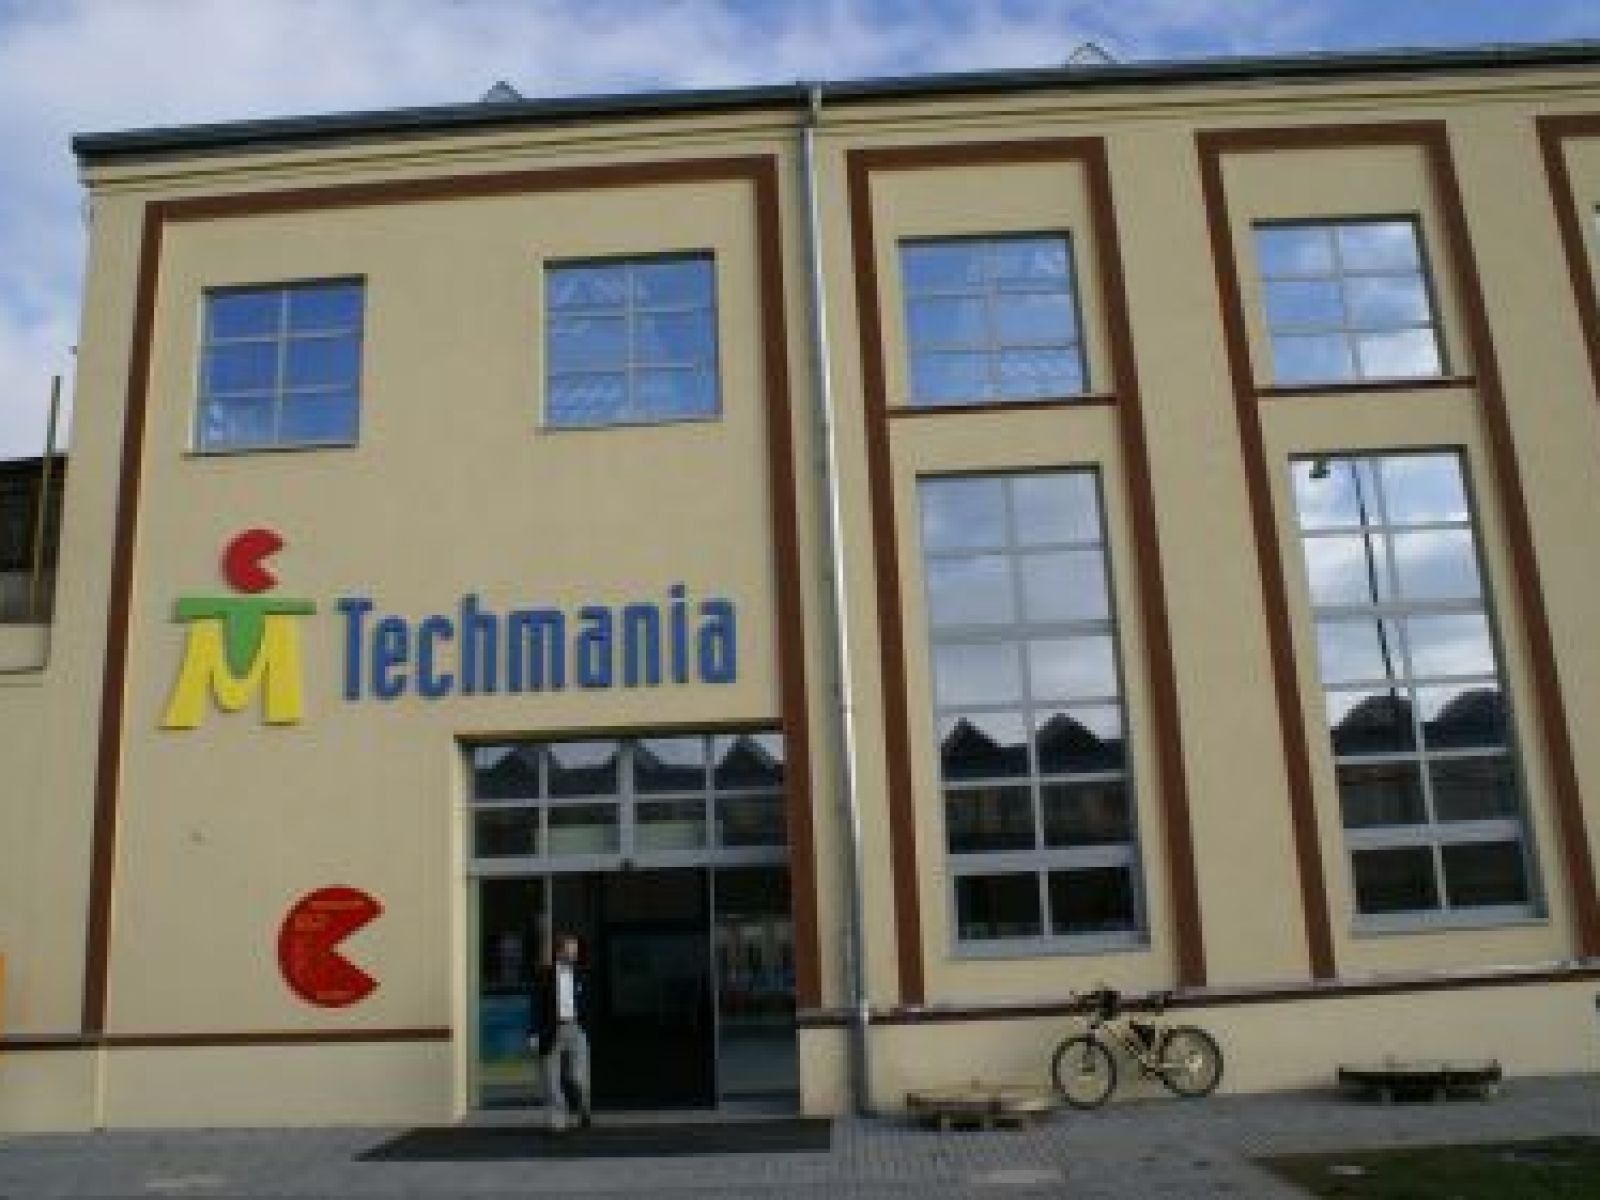 Techmania Science Centre